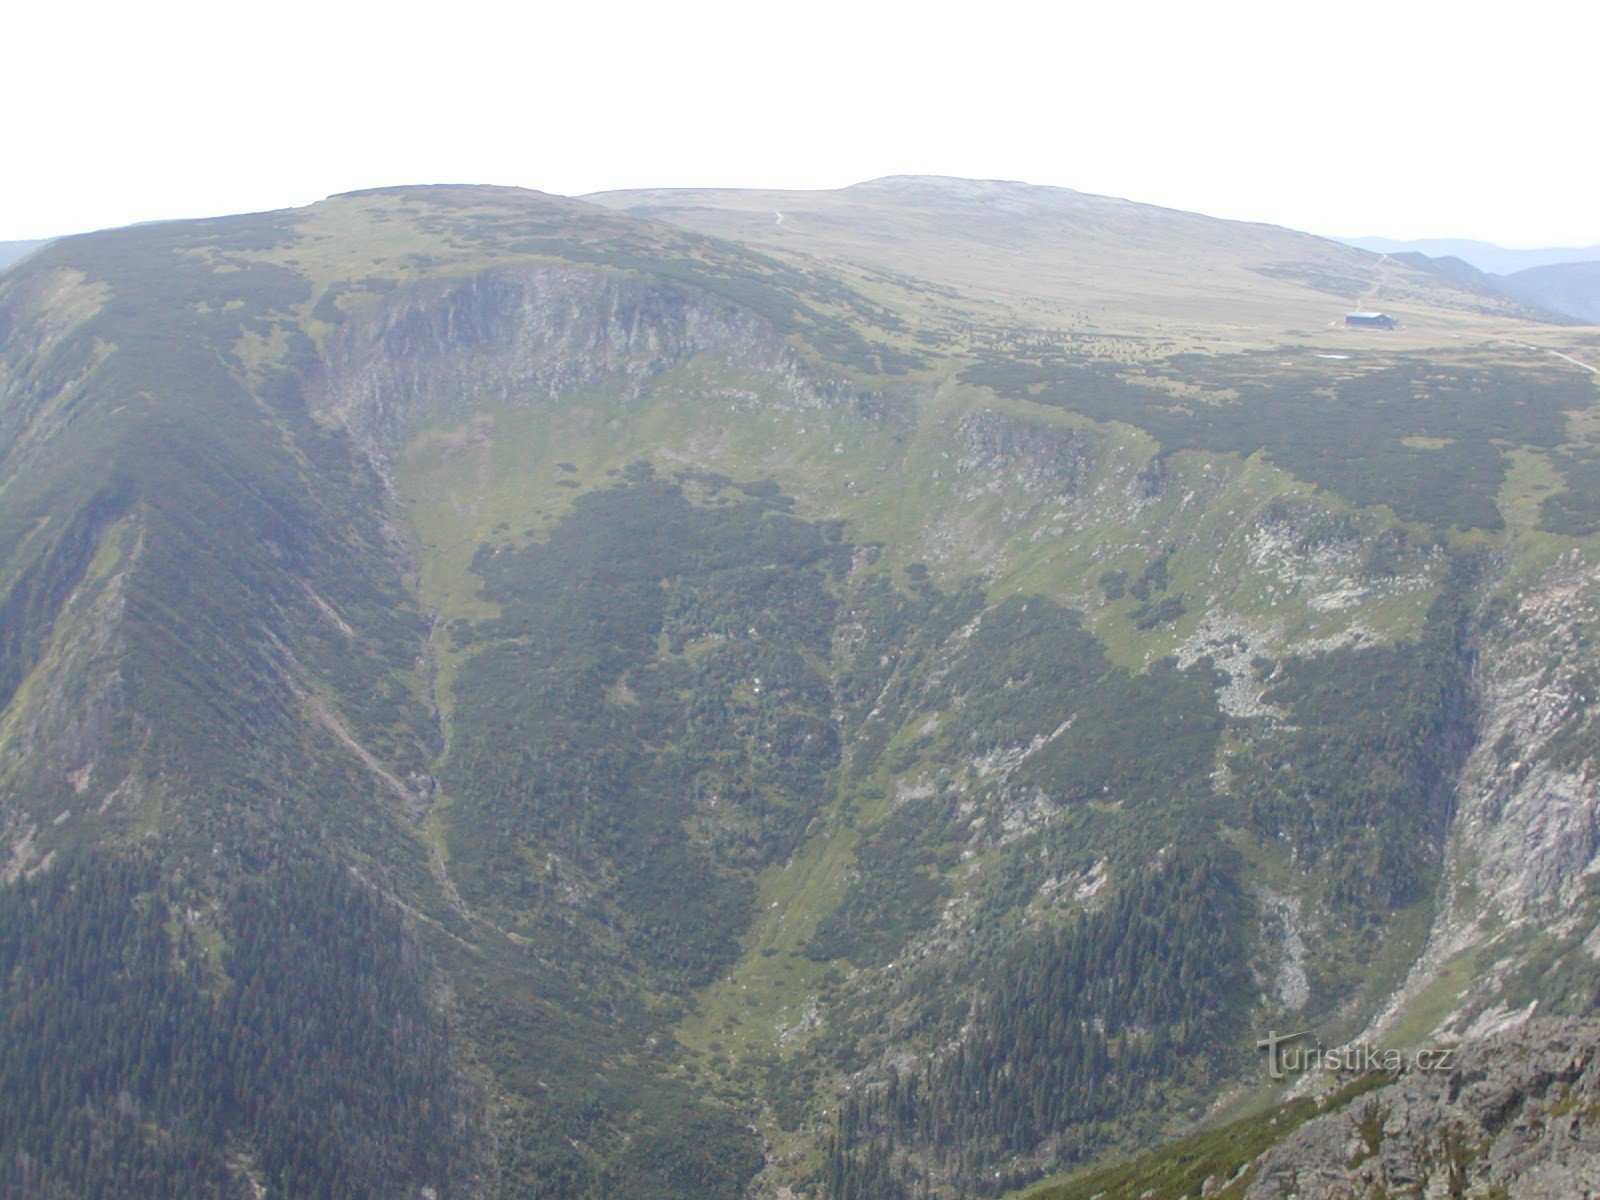 view from Sněžka to Studniční hora